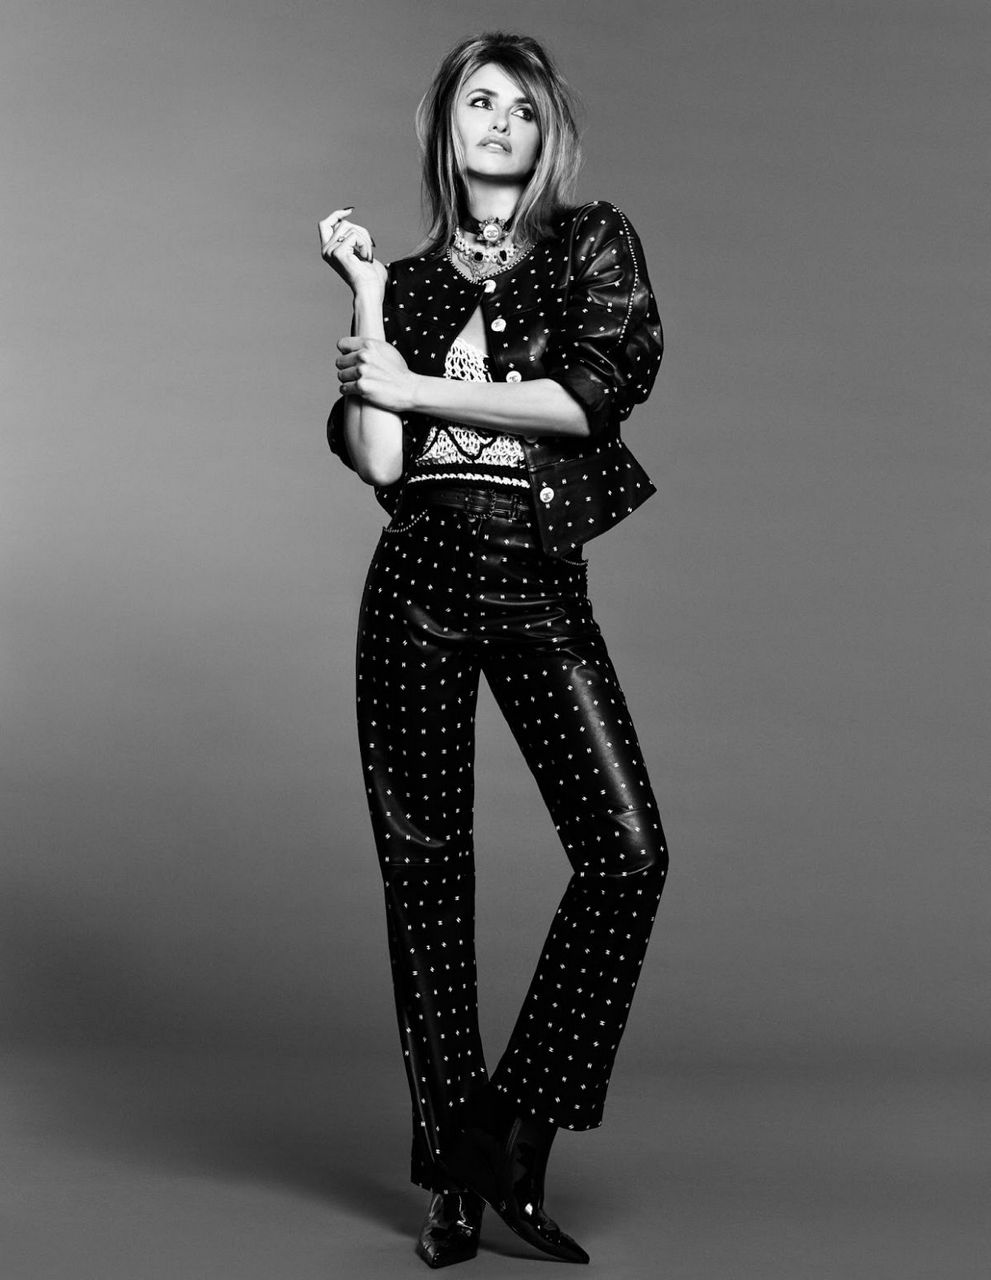 Penelope Cruz For Vogue Magazine Arabia December